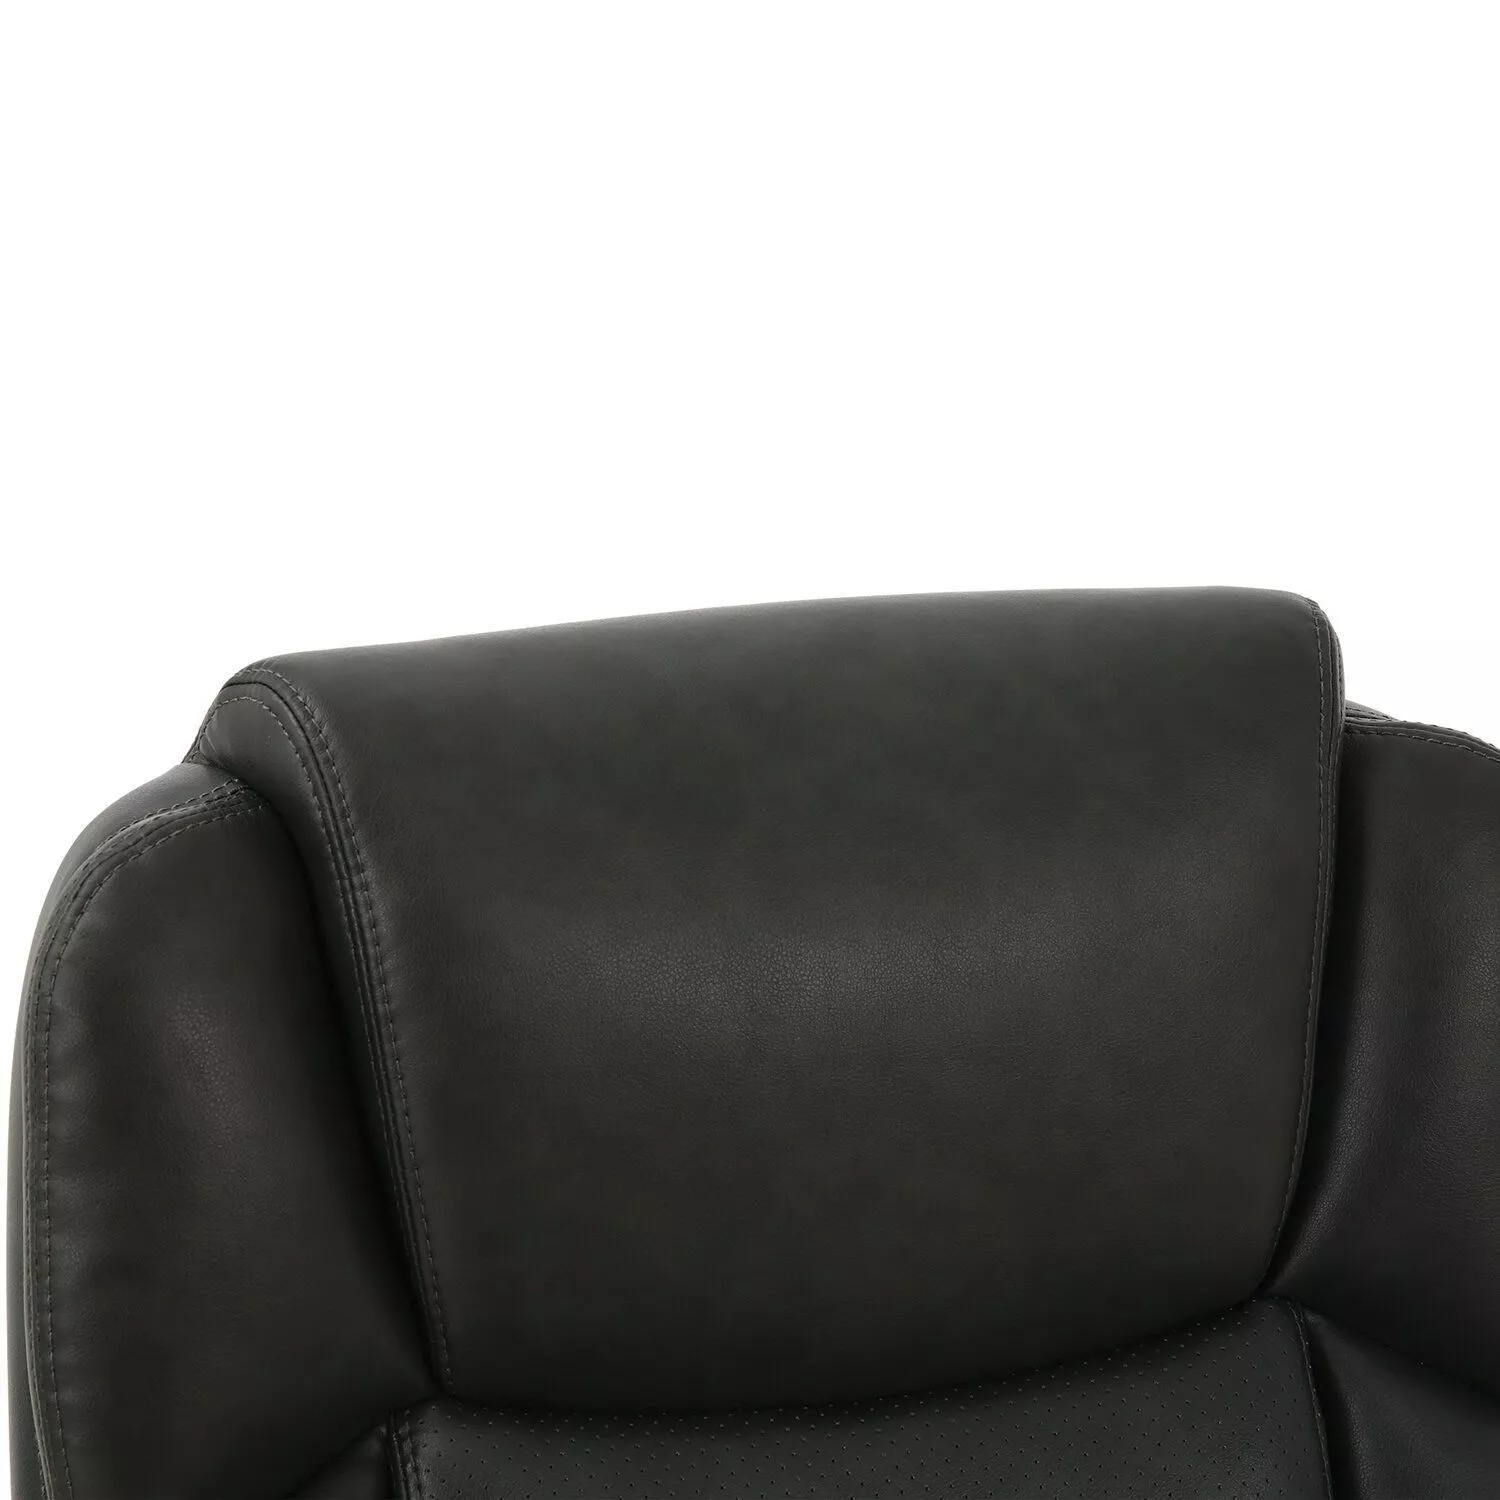 Кресло руководителя BRABIX PREMIUM Favorite EX-577 Серый 531935